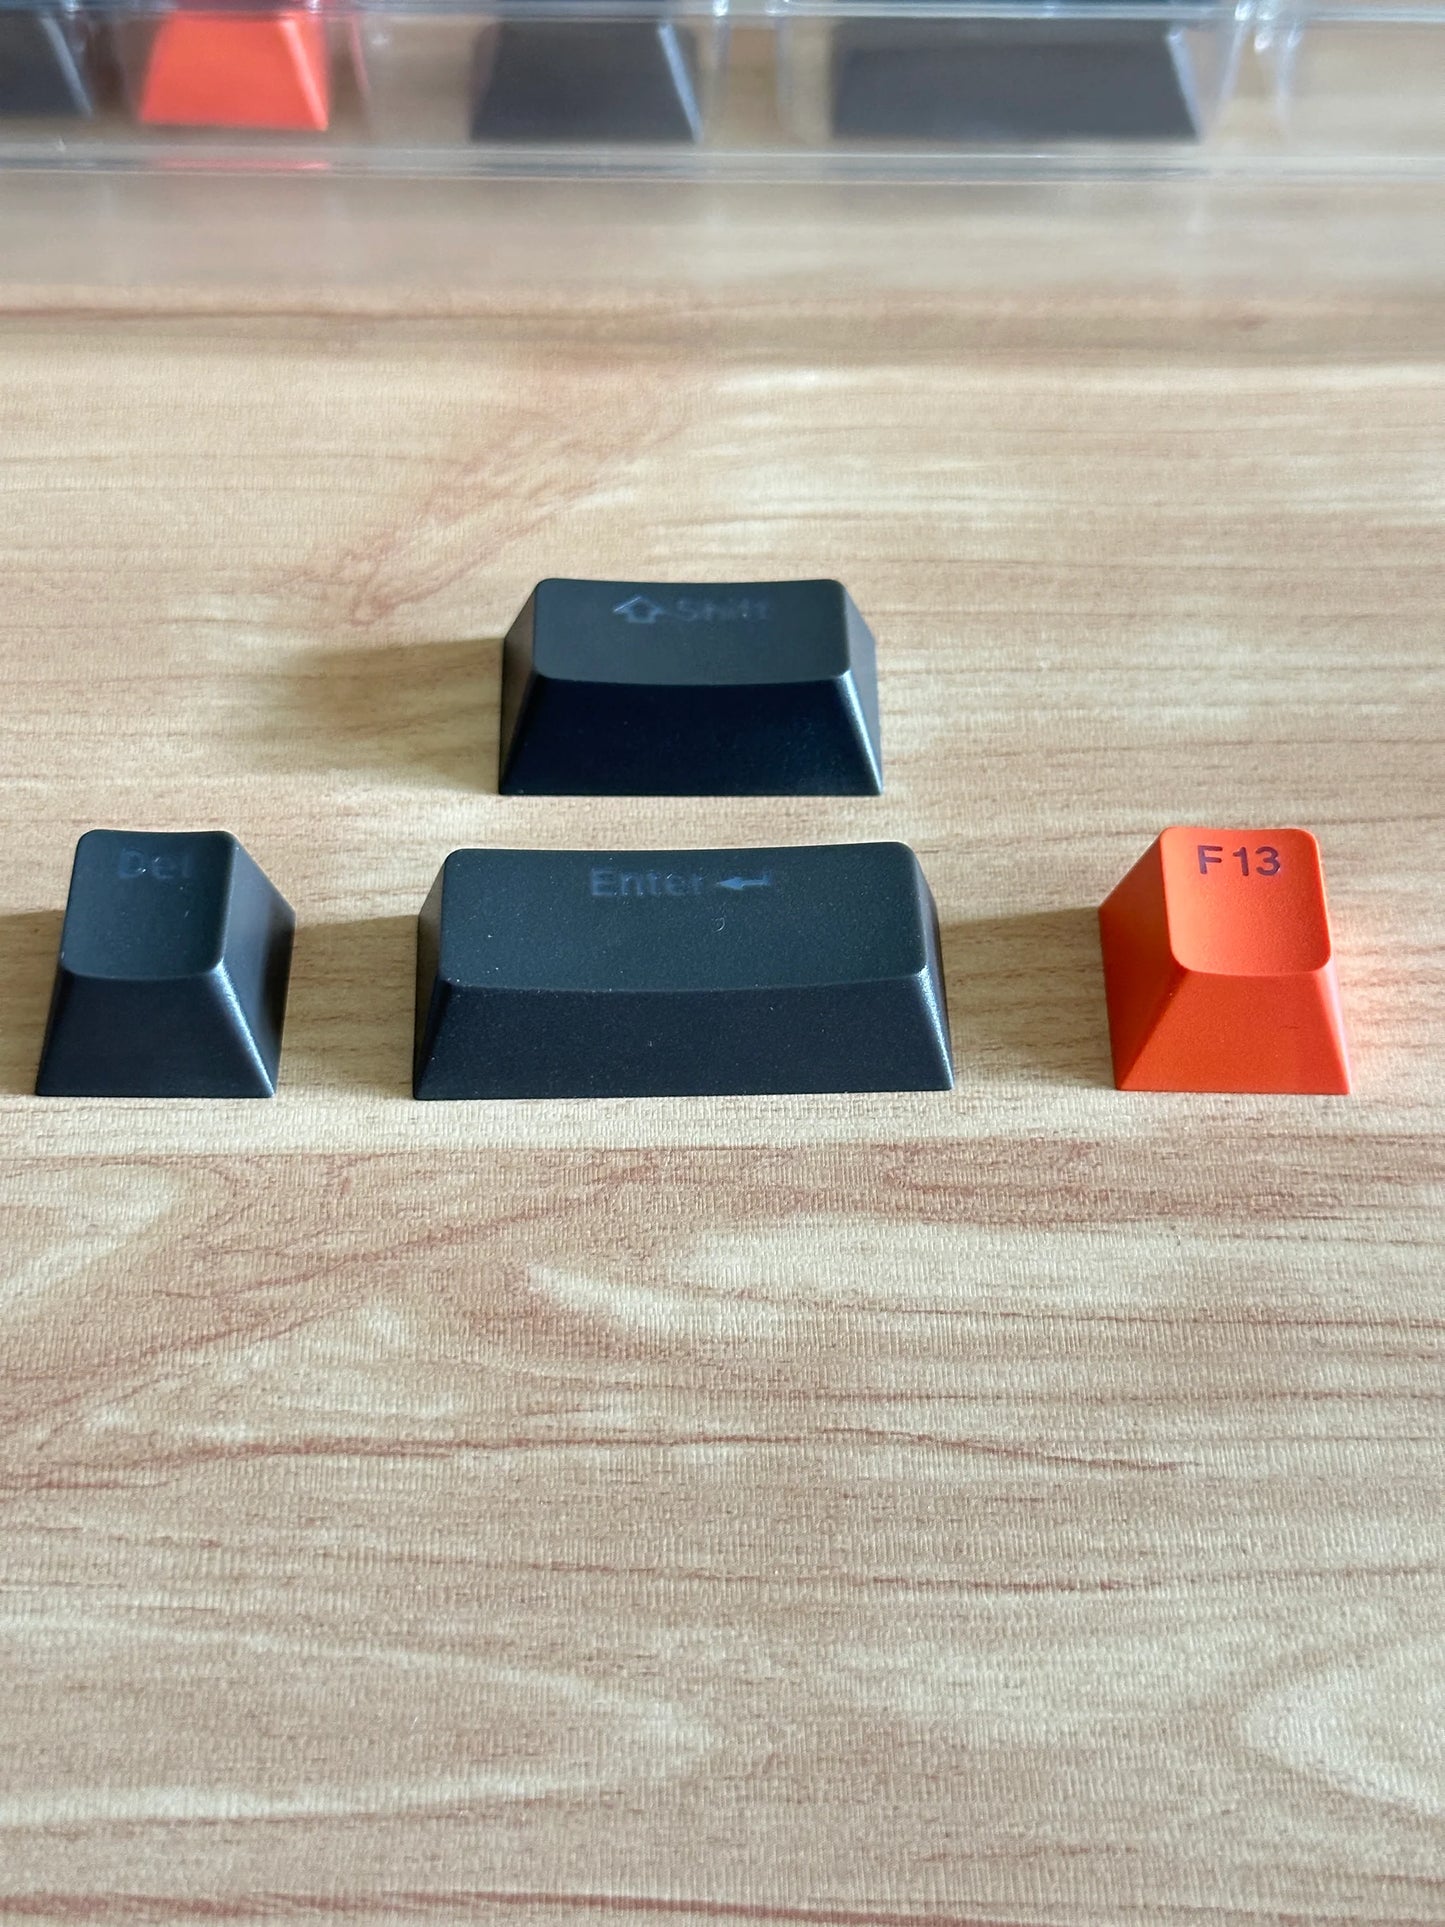 Backlit DaYe Black Orange  Premium Doubleshot OEM Profile Keycaps set of 152 Keys